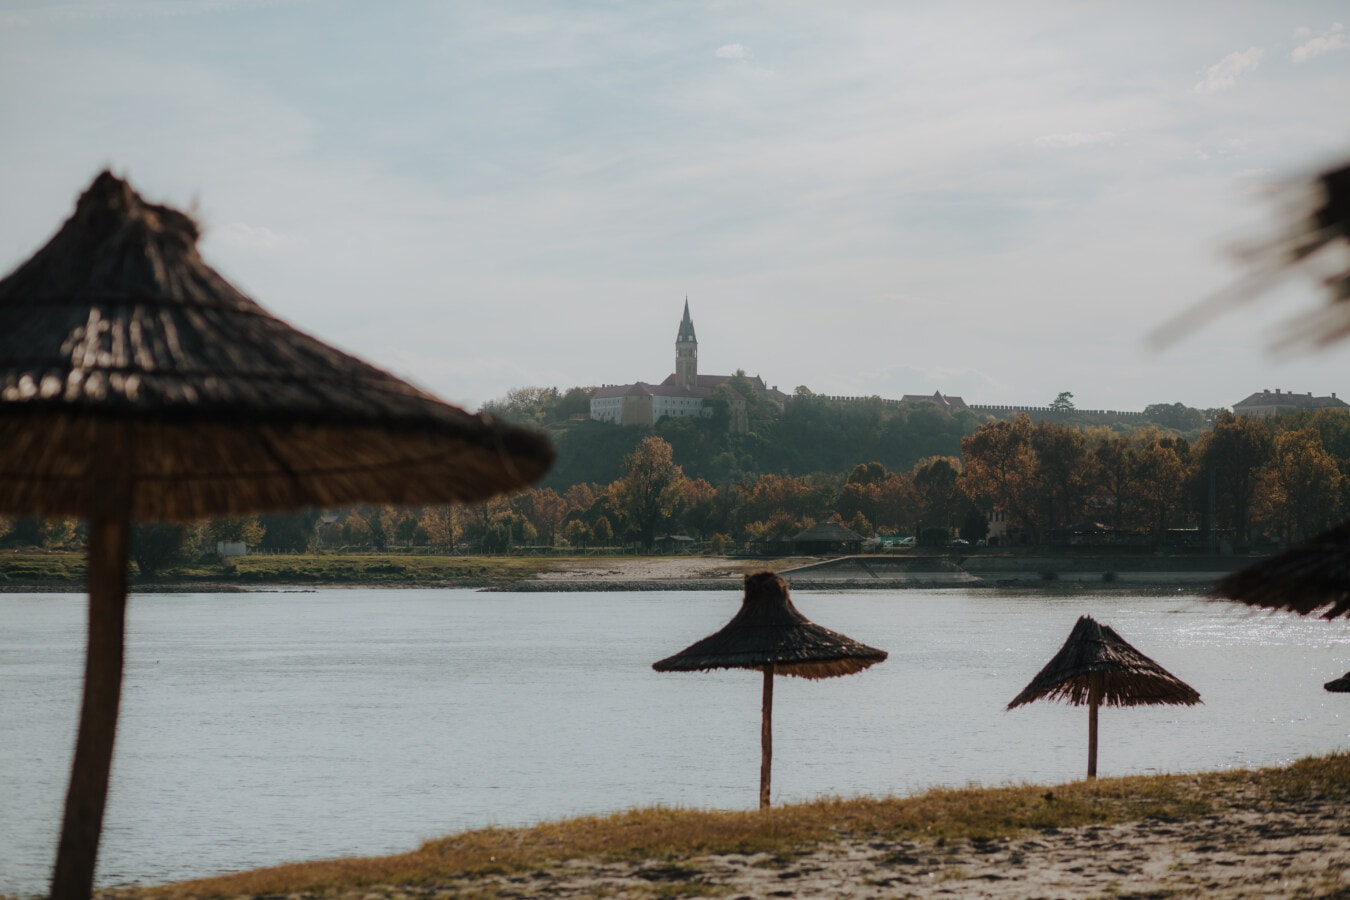 海滩, 多瑙河, 河, 河岸, 阳伞, 秋天季节, 景观, 平静的, 水, 树